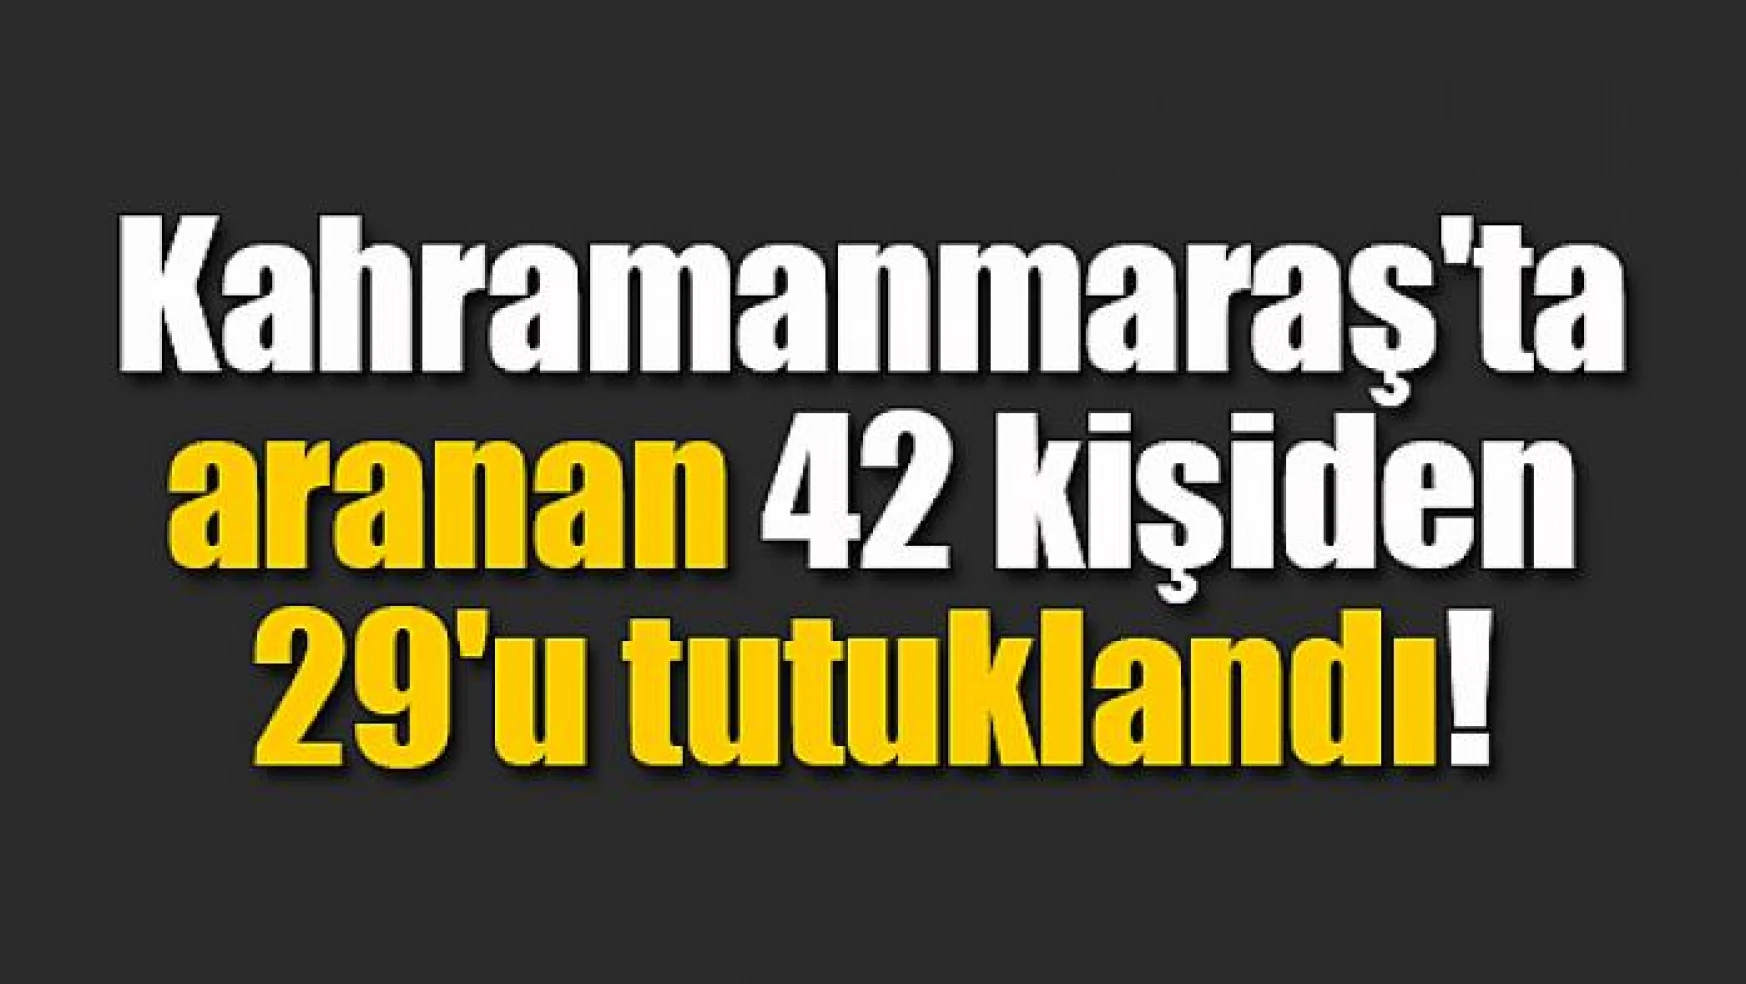 Kahramanmaraş'ta aranan 42 kişiden 29'u tutuklandı